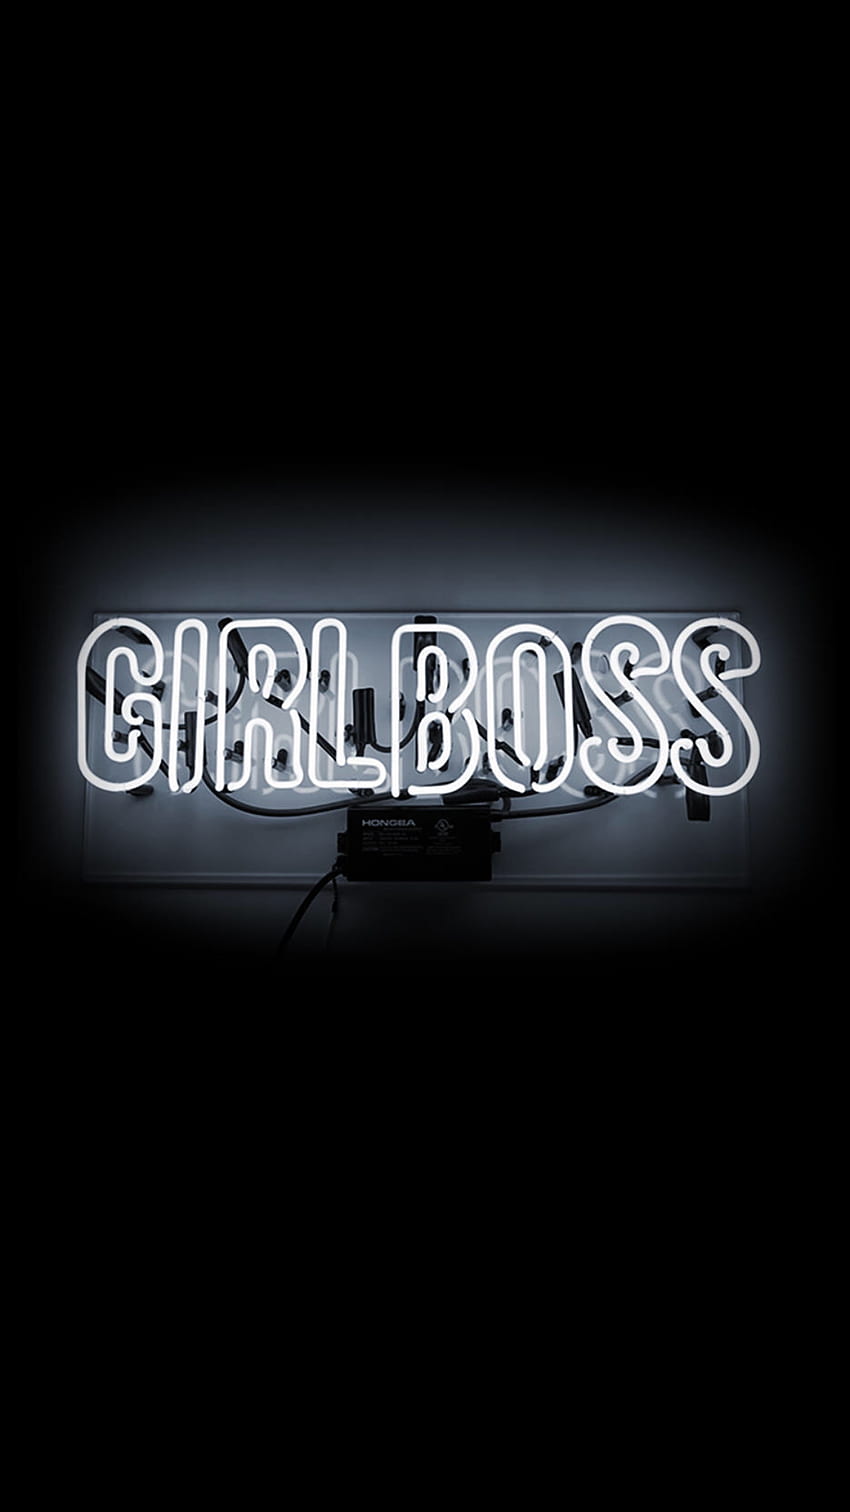 Girlboss “girl boss” iphone . iphone HD phone wallpaper